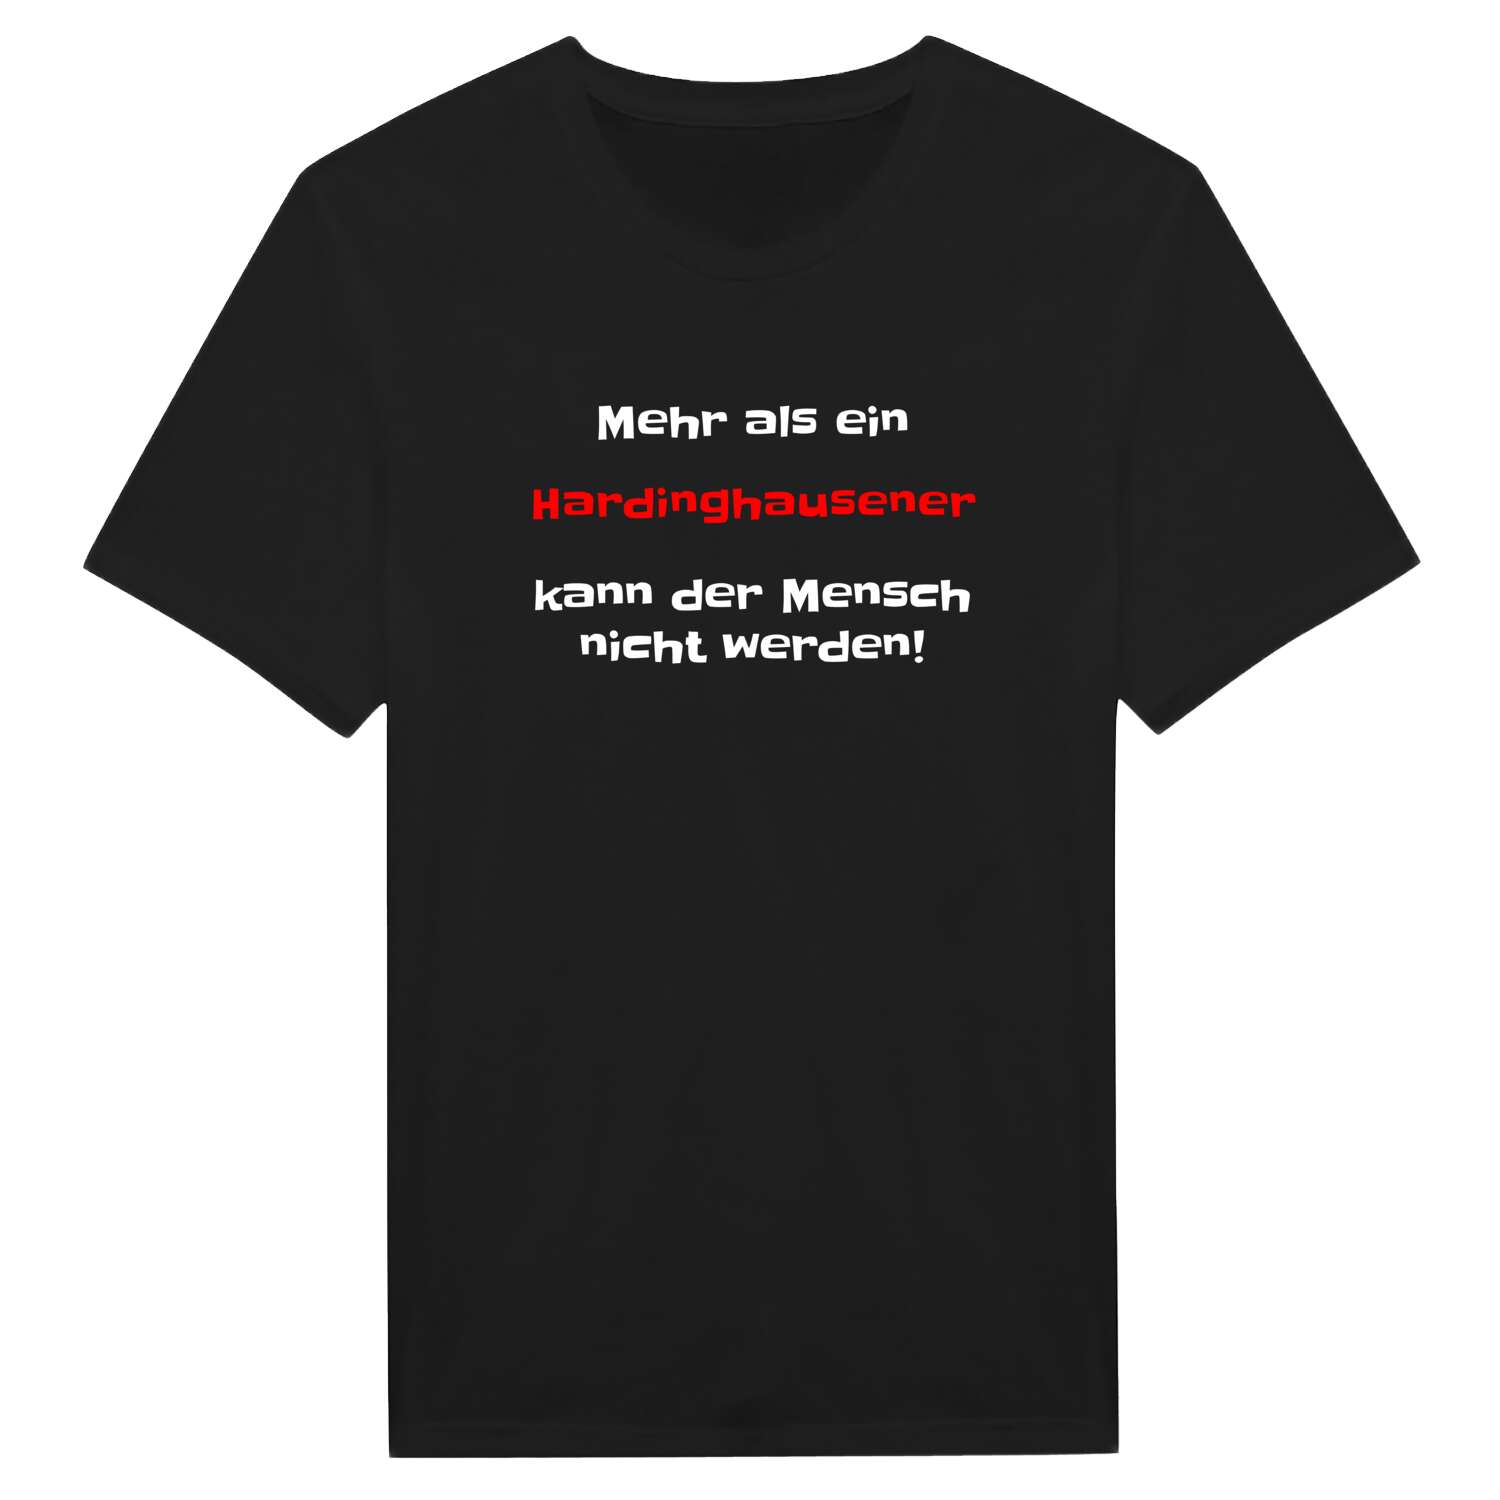 Hardinghausen T-Shirt »Mehr als ein«